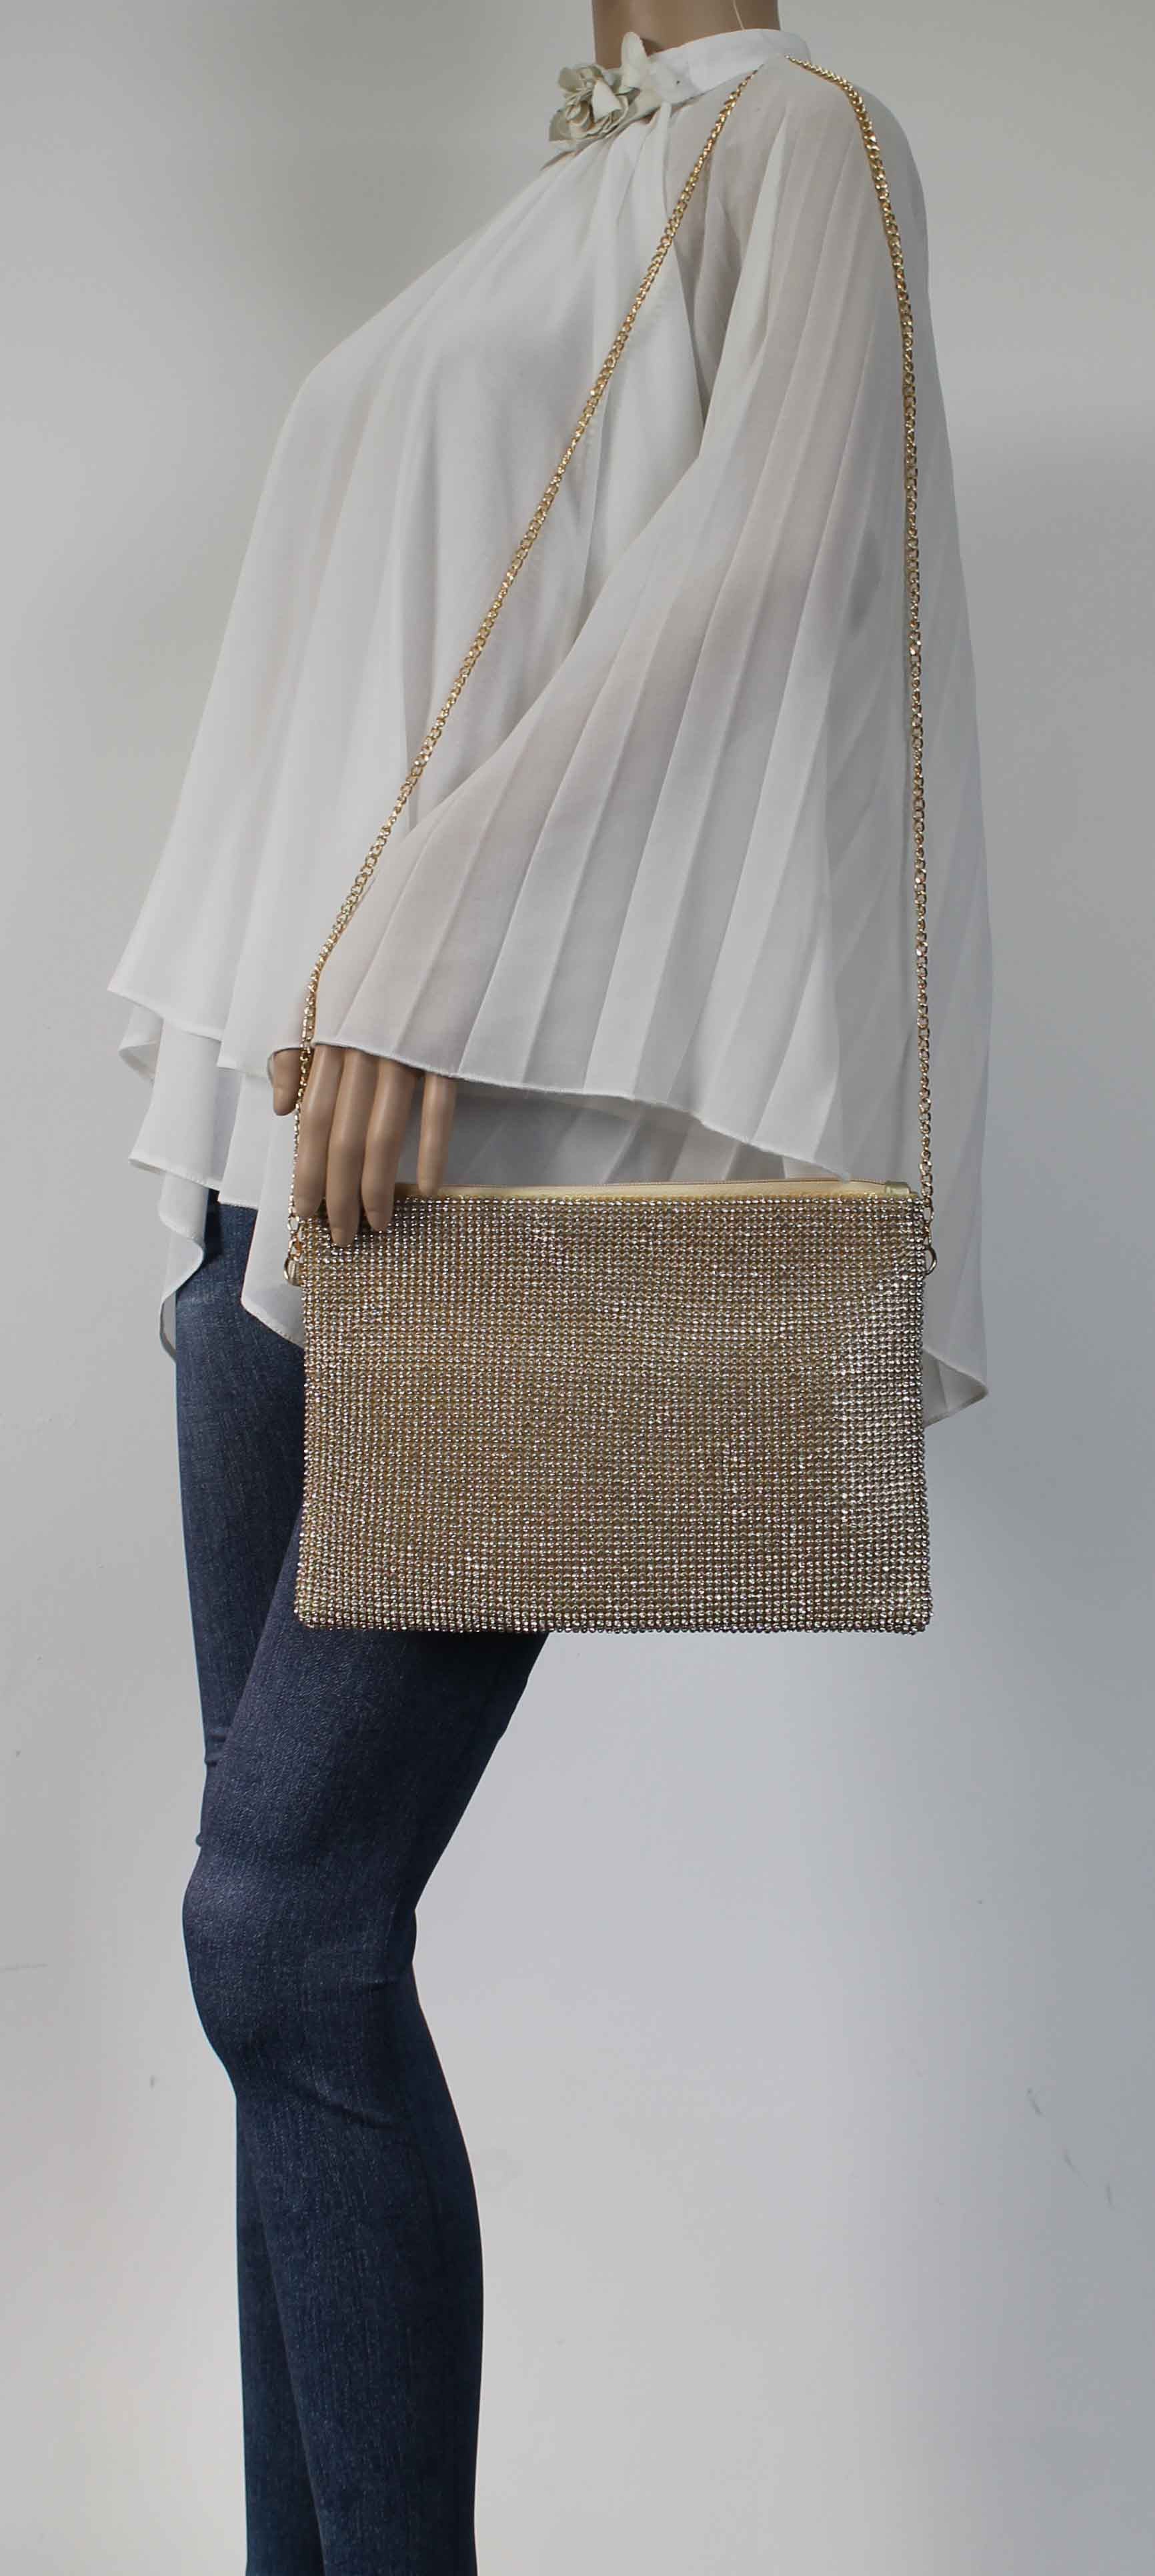 SWANKYSWANS Marla Slim Clutch Bag Gold Cute Cheap Clutch Bag For Weddings School and Work